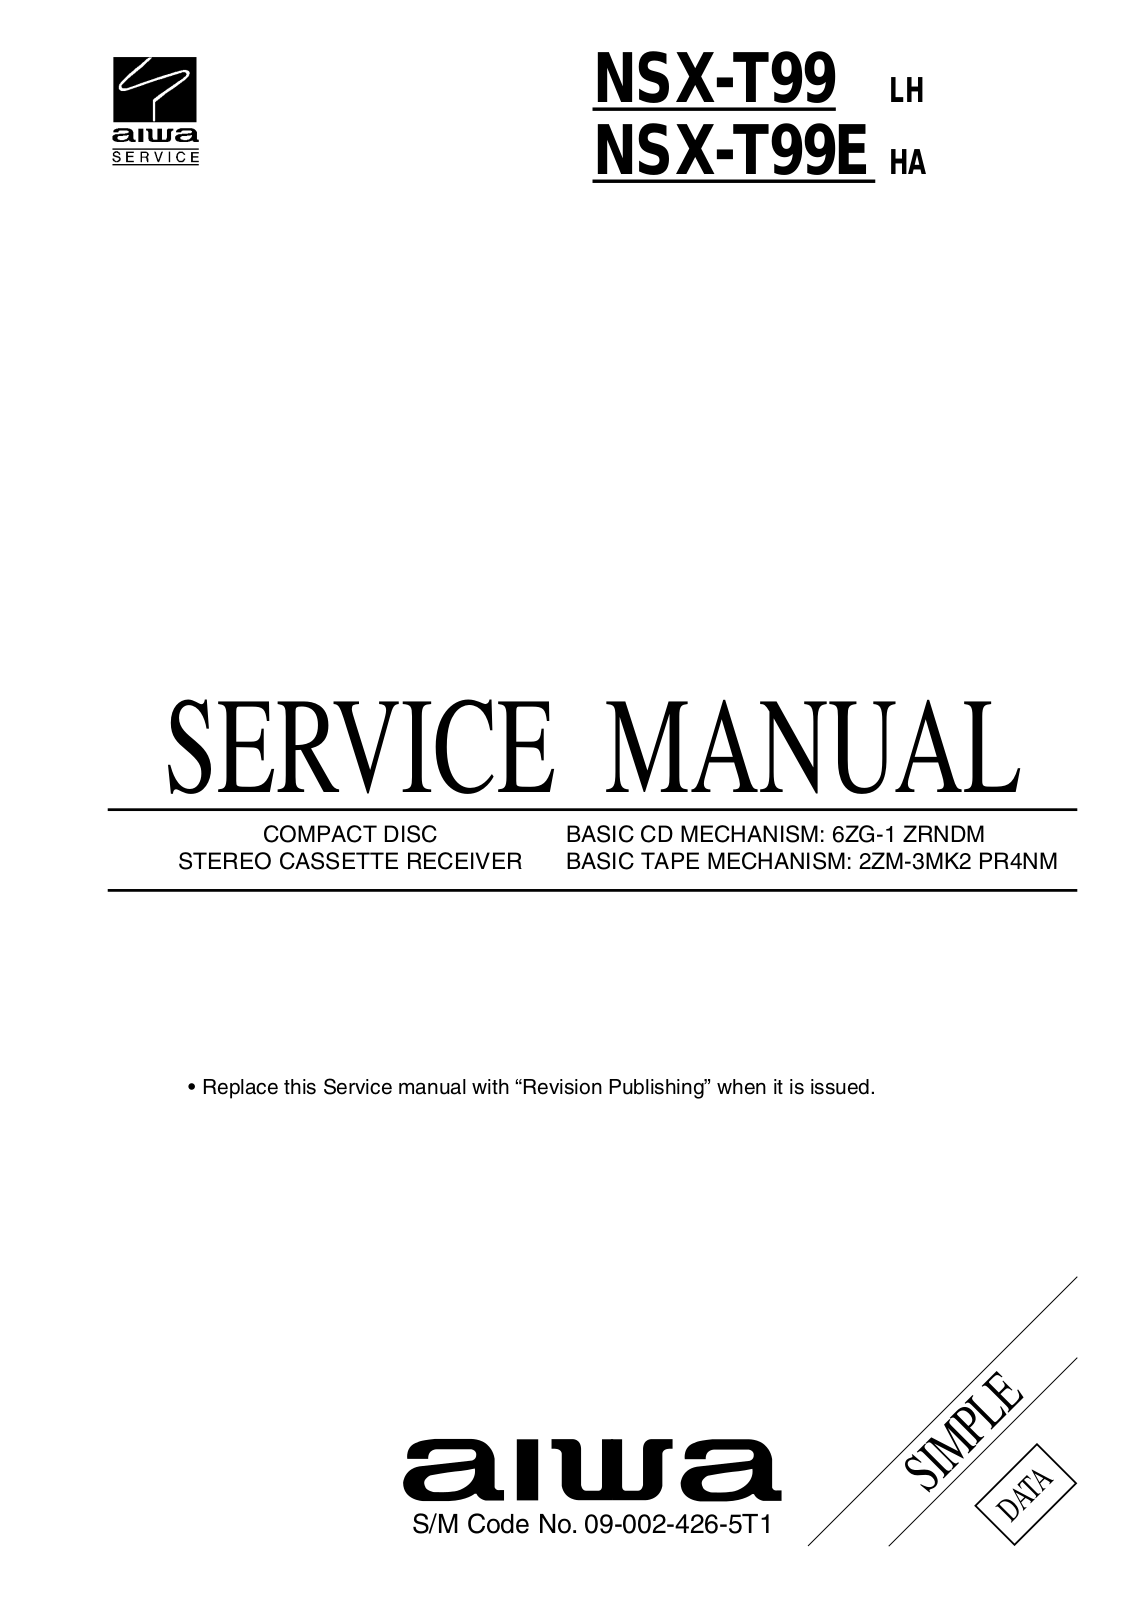 Aiwa NSX-T99 LH Service Manual